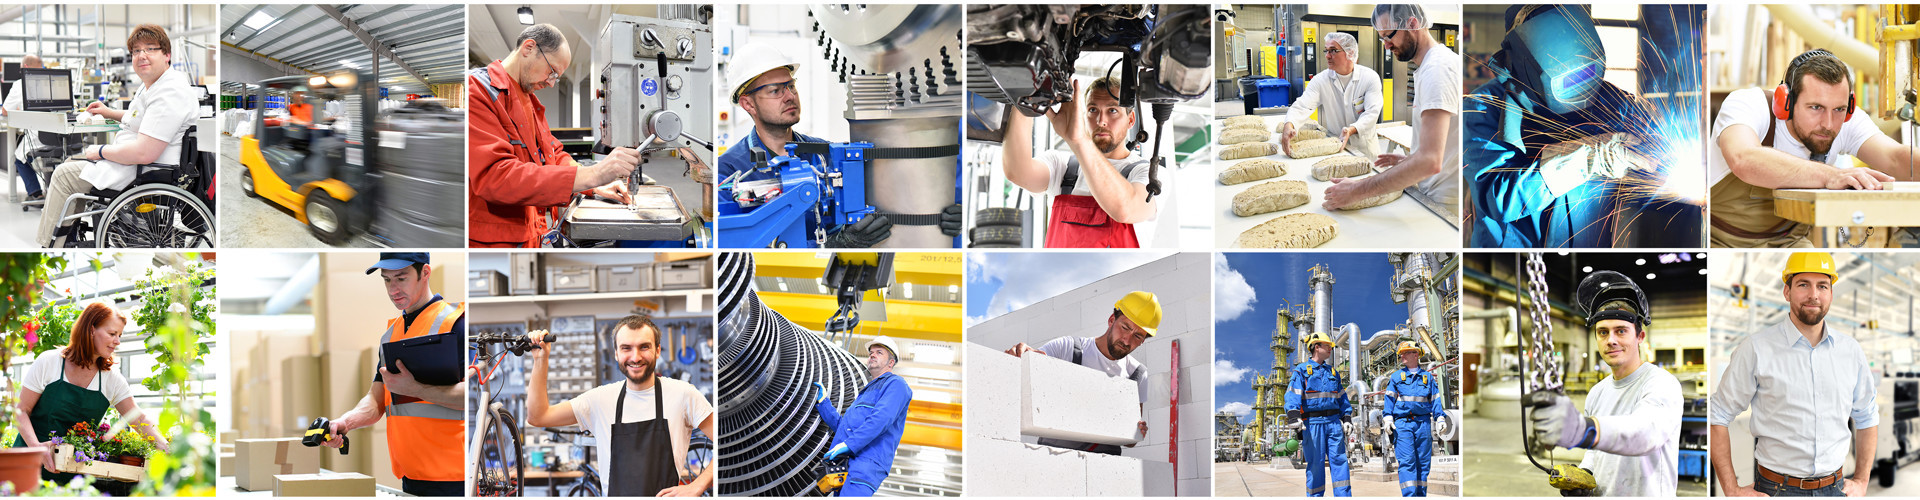 Eine Collage unterschiedlichster Arbeitsplätze im Industrie- Handwerks- und Dienstleistungssektor. © industrieblick, stock.adobe.com